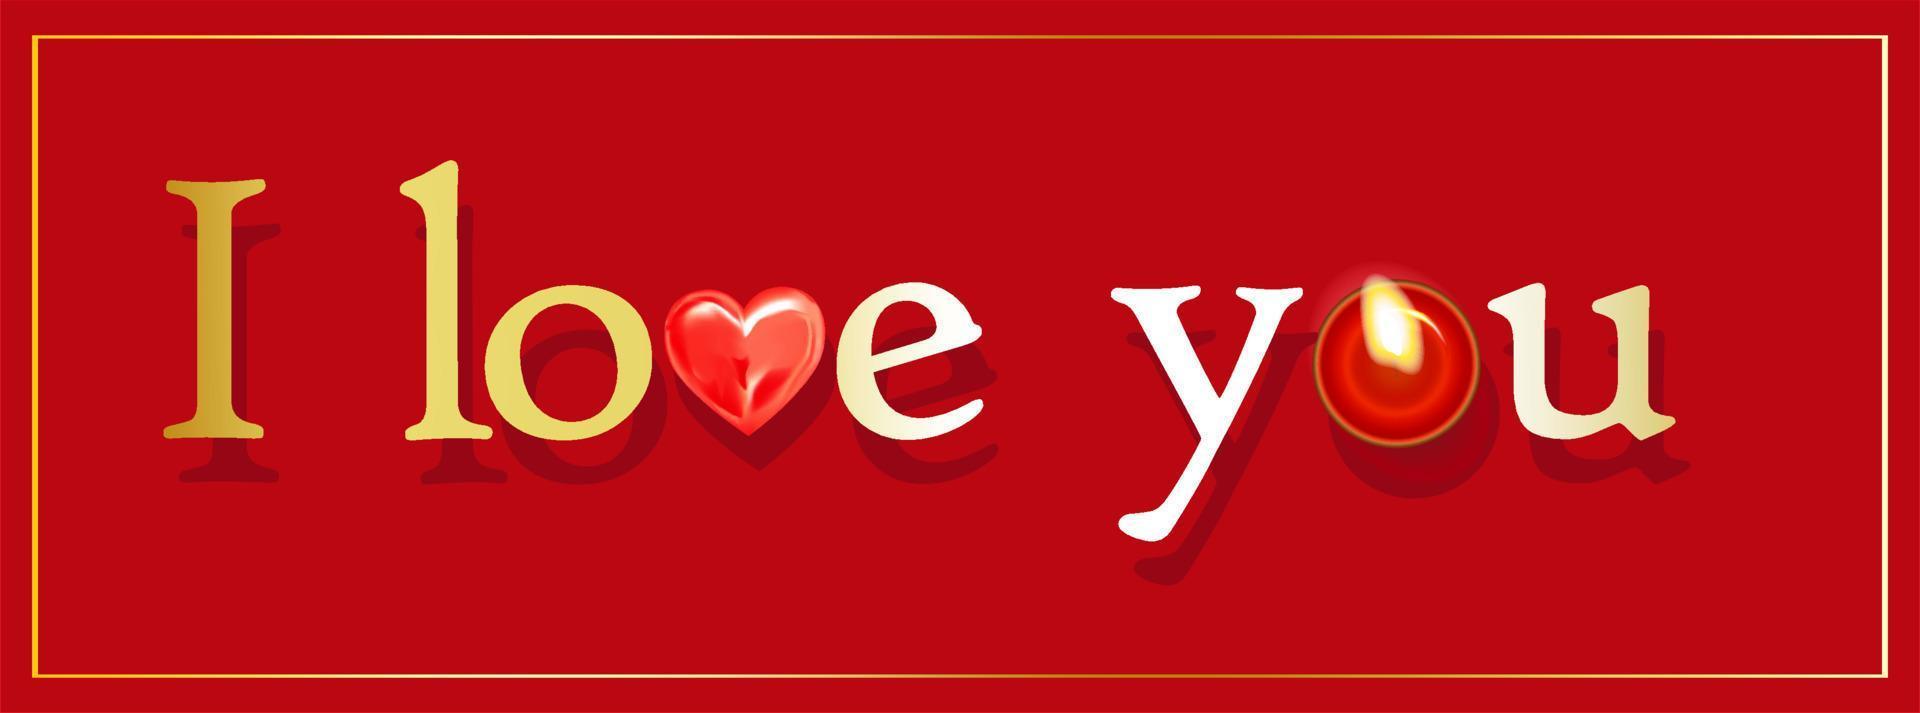 te quiero. texto o inscripción en inglés. diciendo en amor. tarjeta de felicitación romántica. día de san valentín, 14 de febrero. fondo rojo ilustración vectorial vector